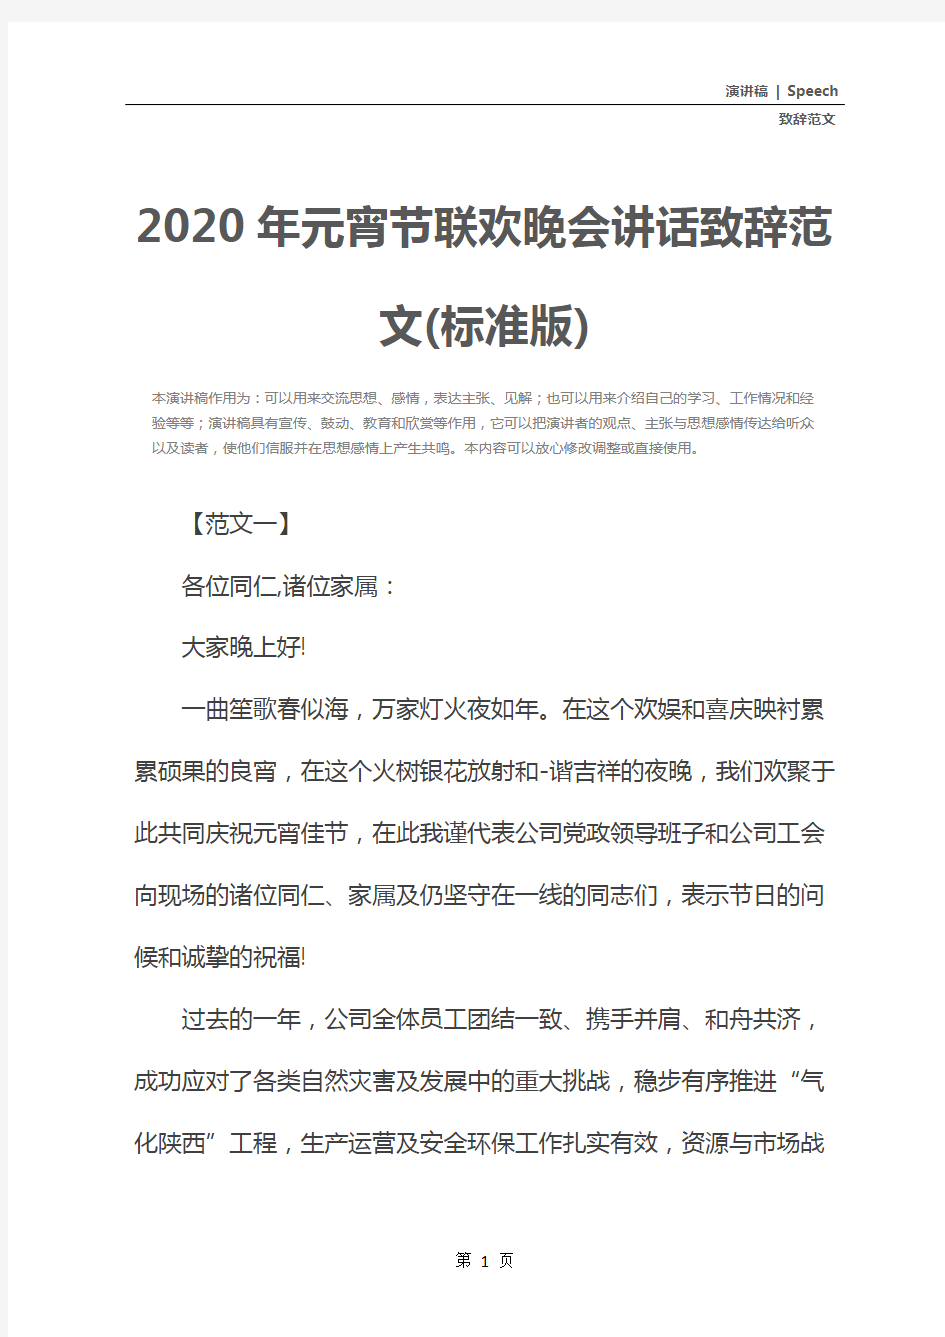 2020年元宵节联欢晚会讲话致辞范文(标准版)